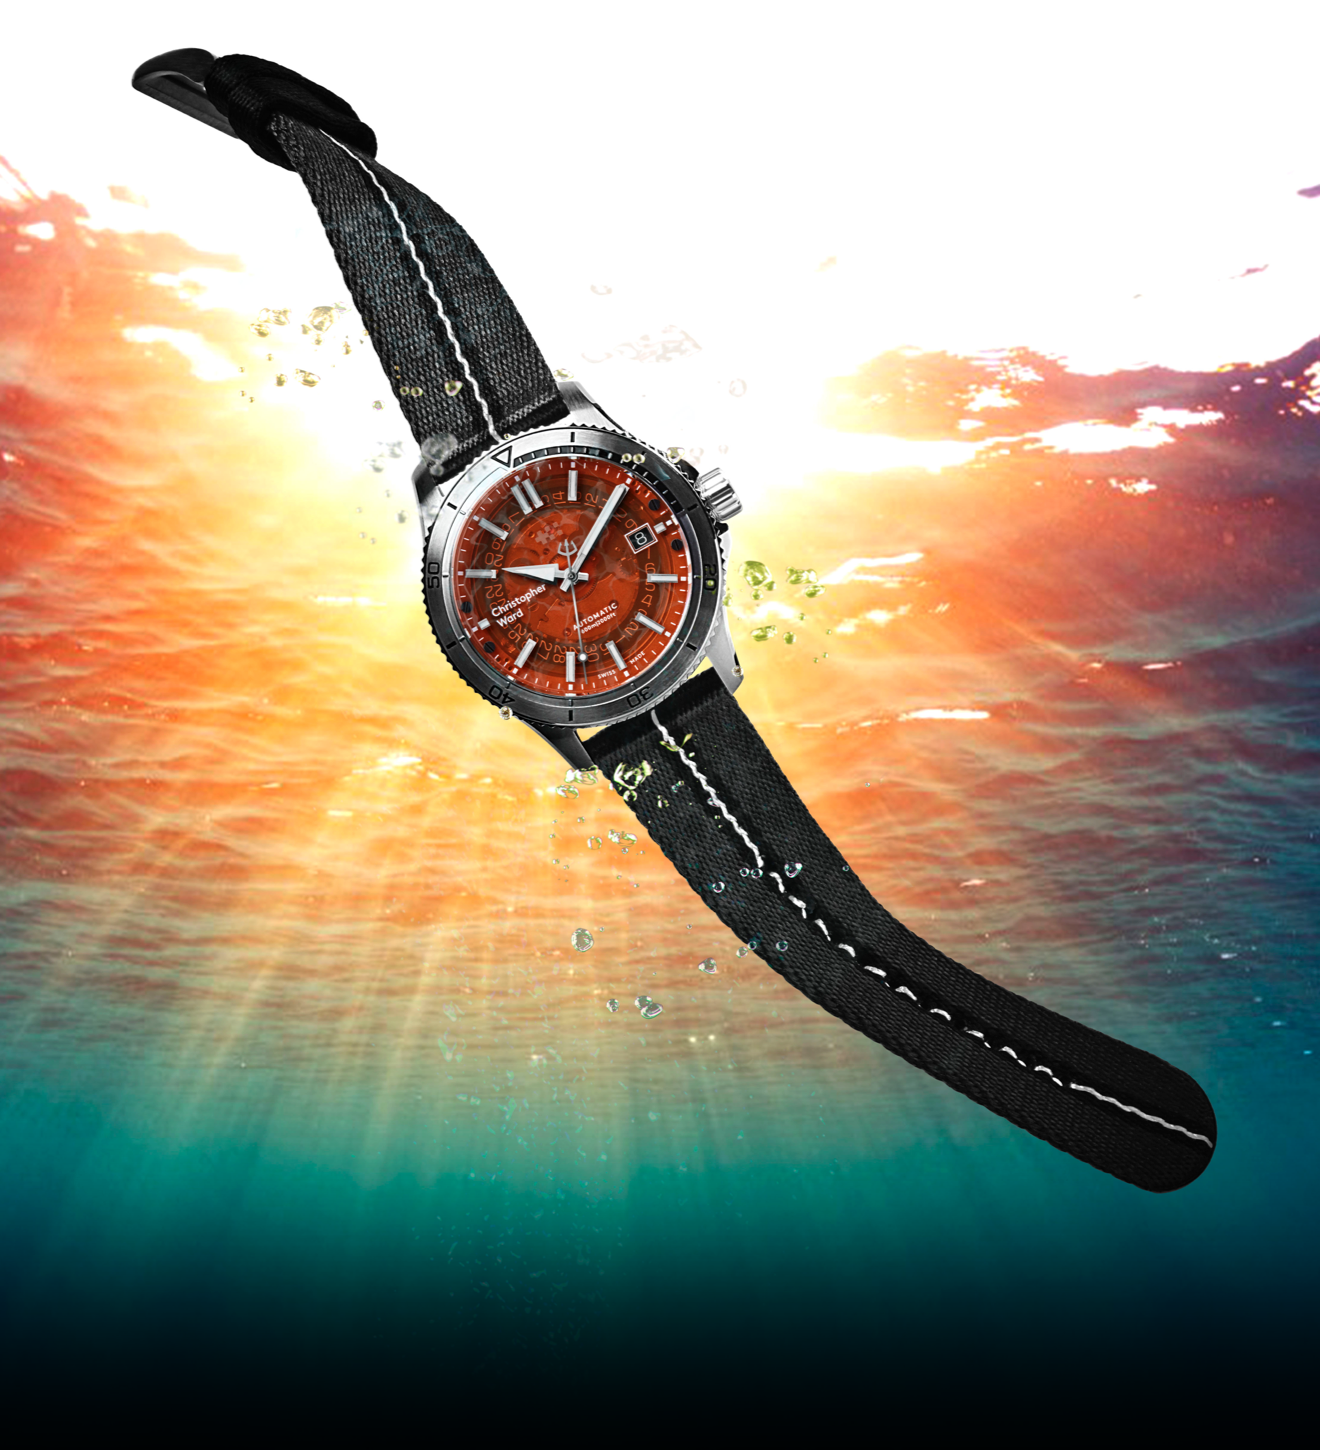 The NEW C60 Sapphire Orange and #tide strap: the future’s bright